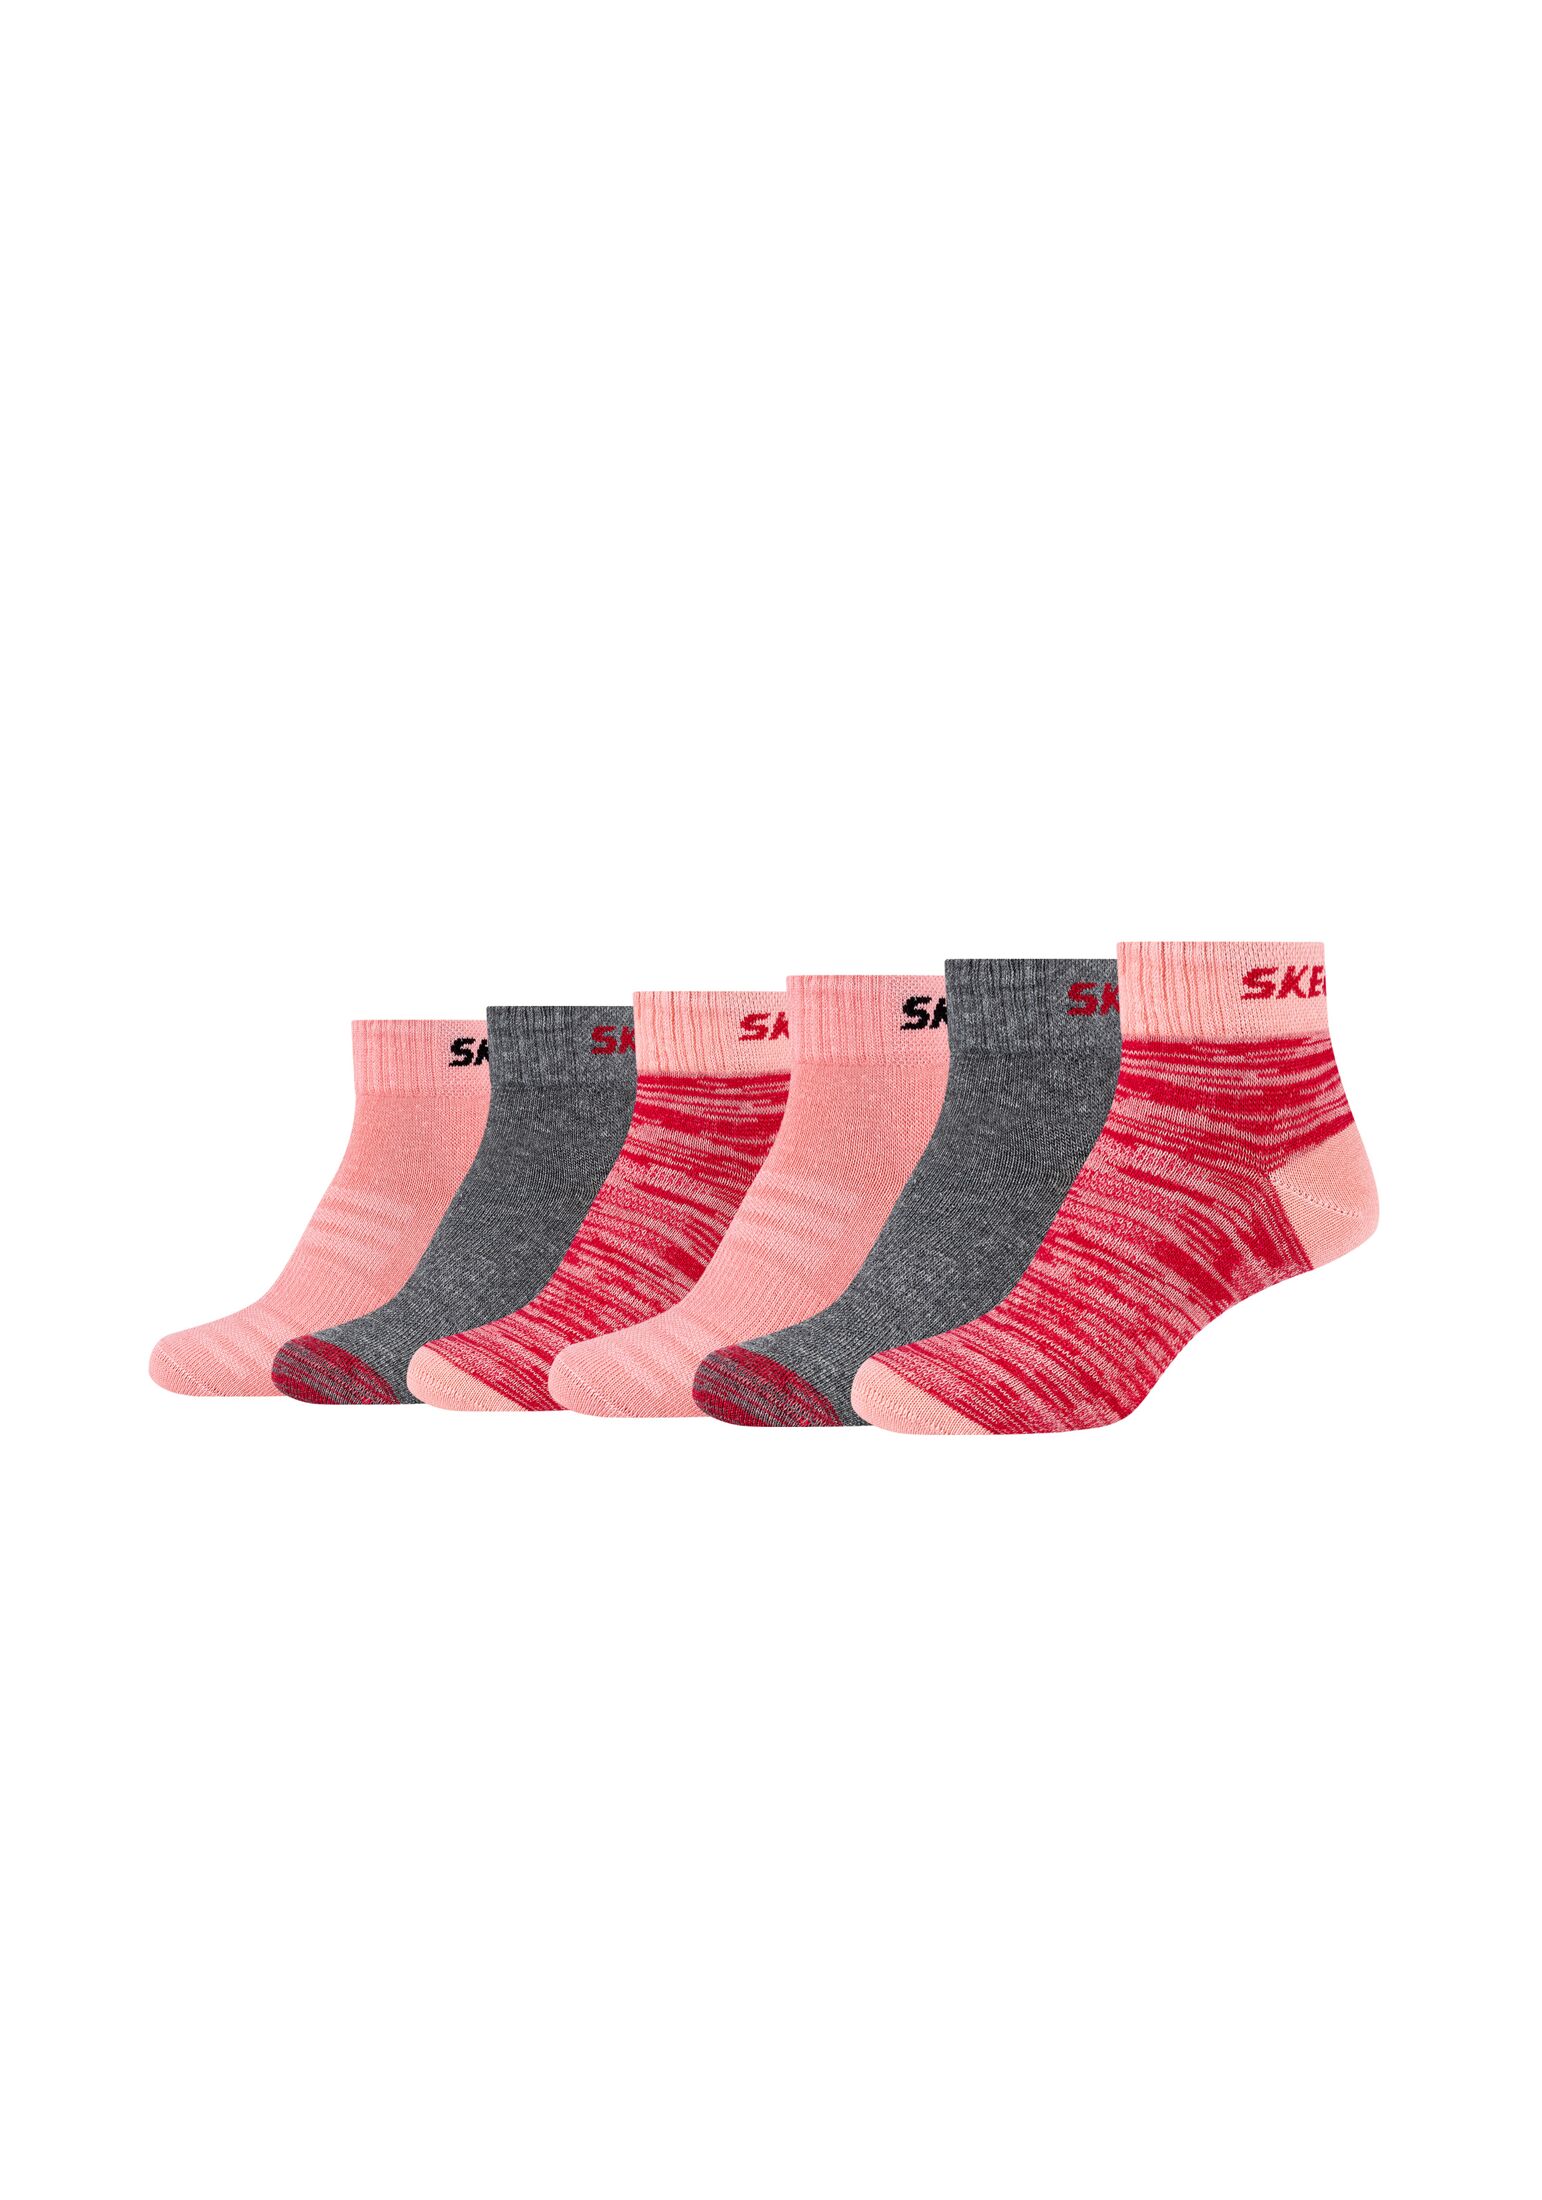 Носки Skechers 6 шт mesh ventilation, цвет flamingo mix носки skechers sneaker 6 шт mesh ventilation цвет pink glow mix